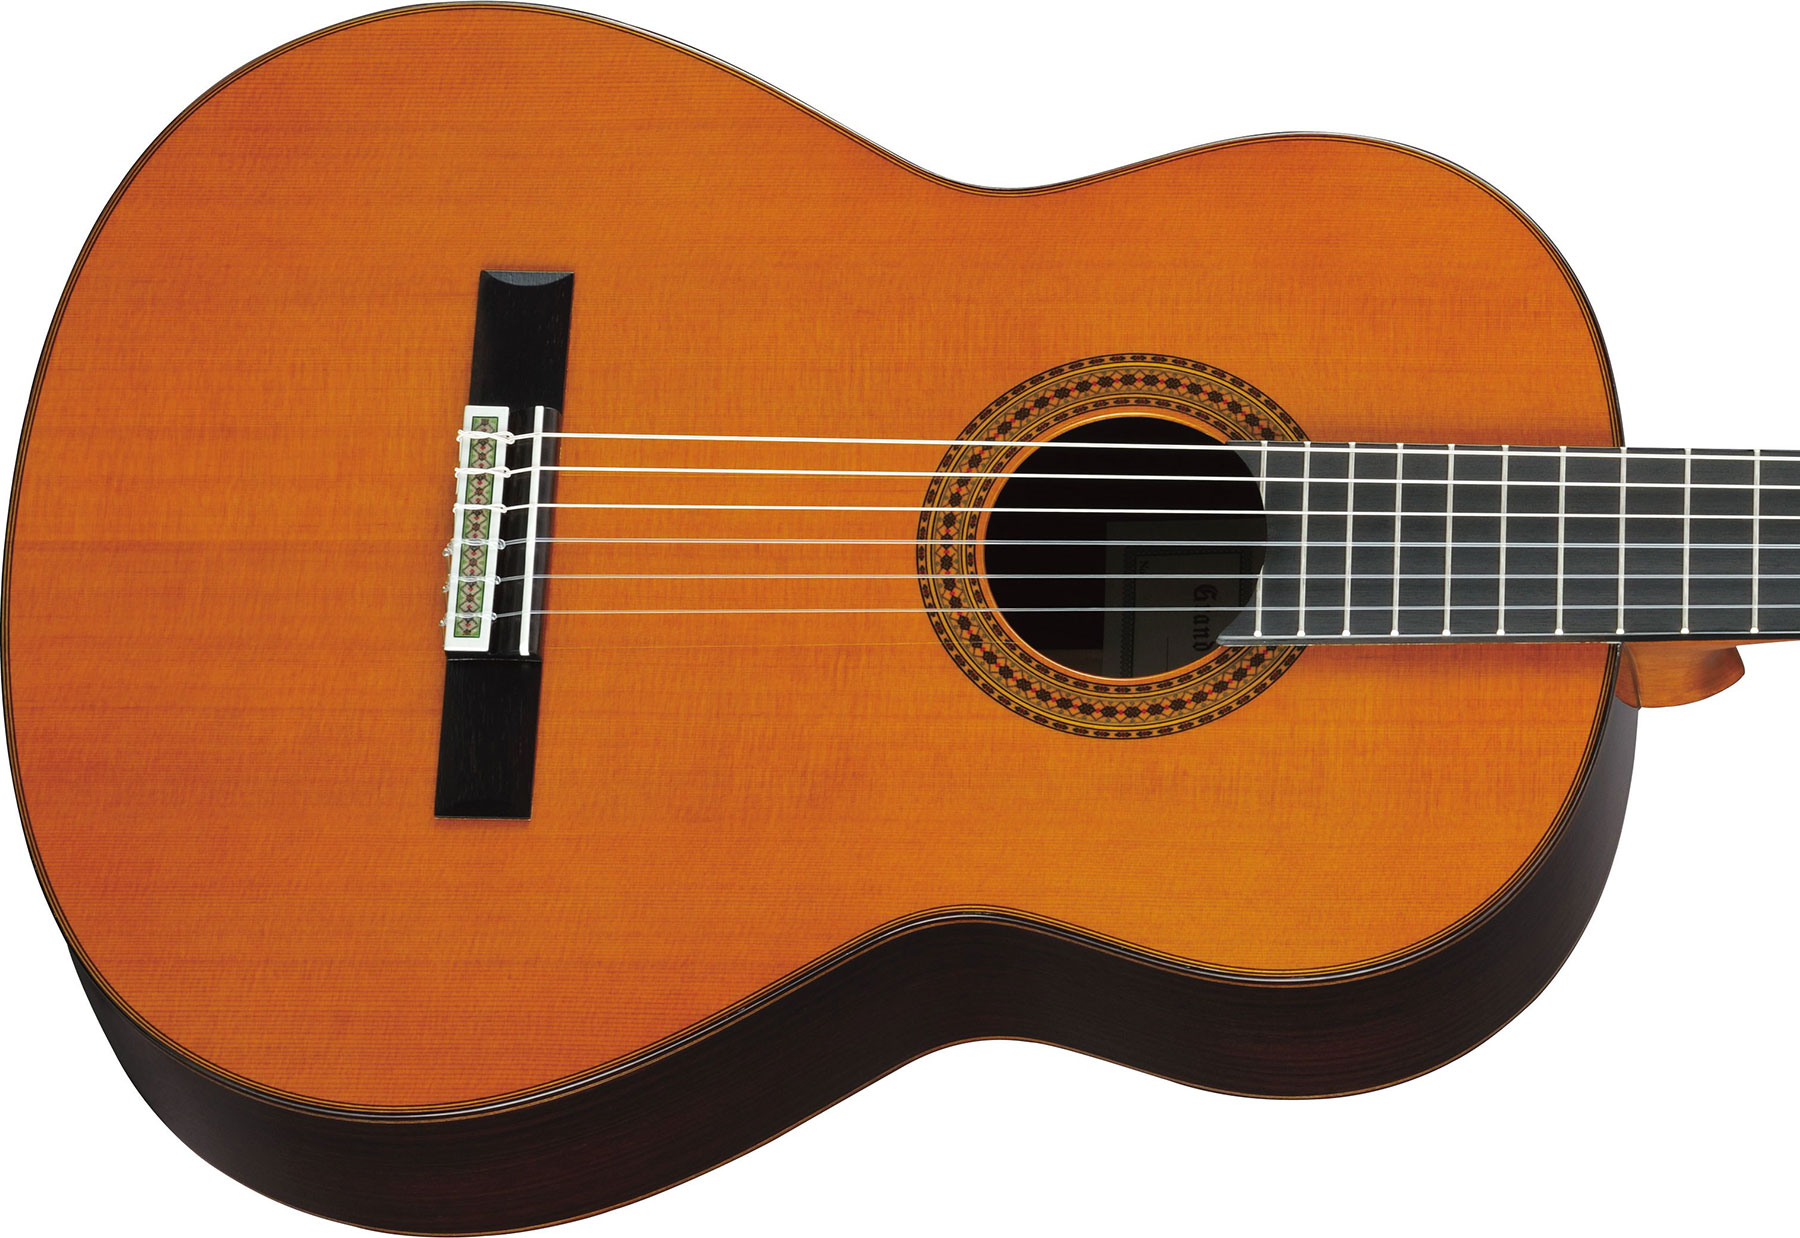 Yamaha GC22C Grand Concert - natural Classical guitar 4/4 size